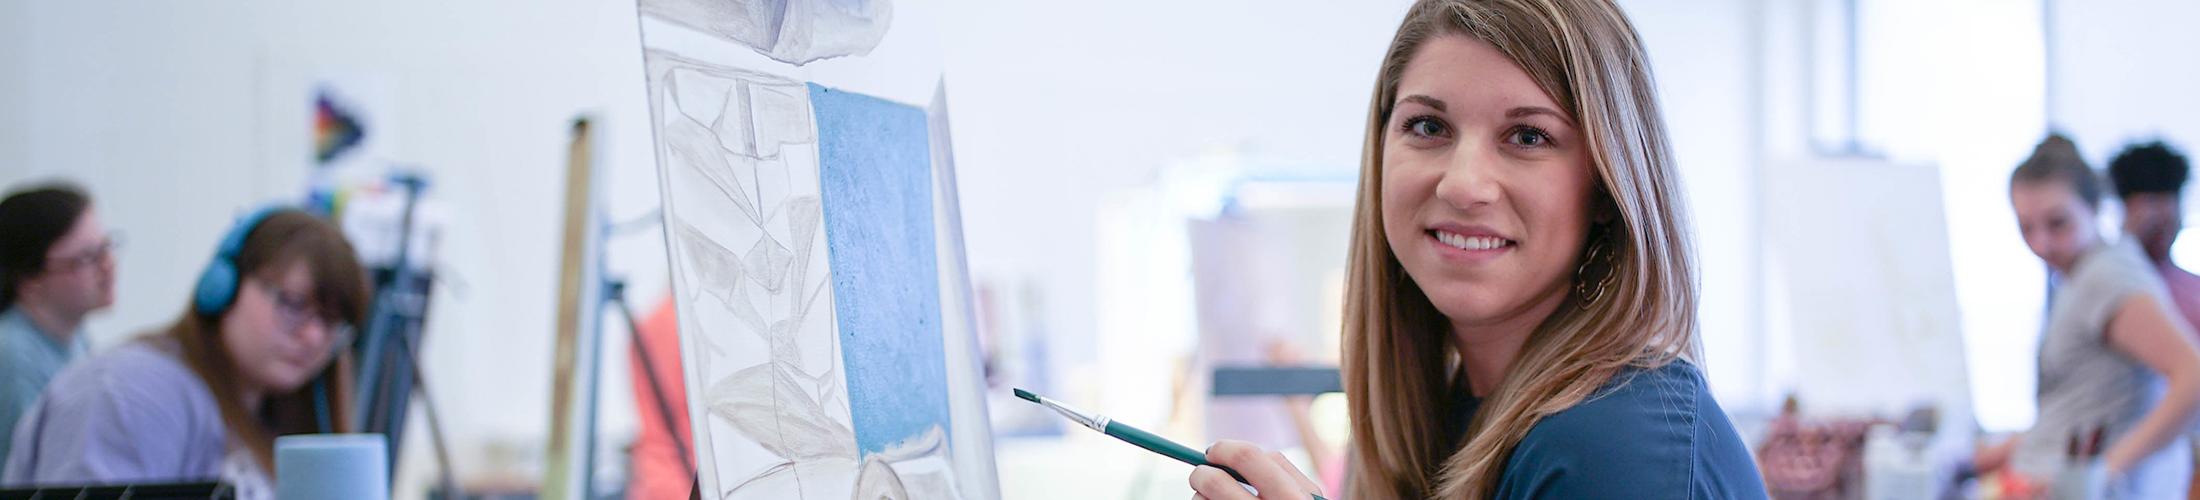 美术课上，学生拿着画笔在她面前画画.